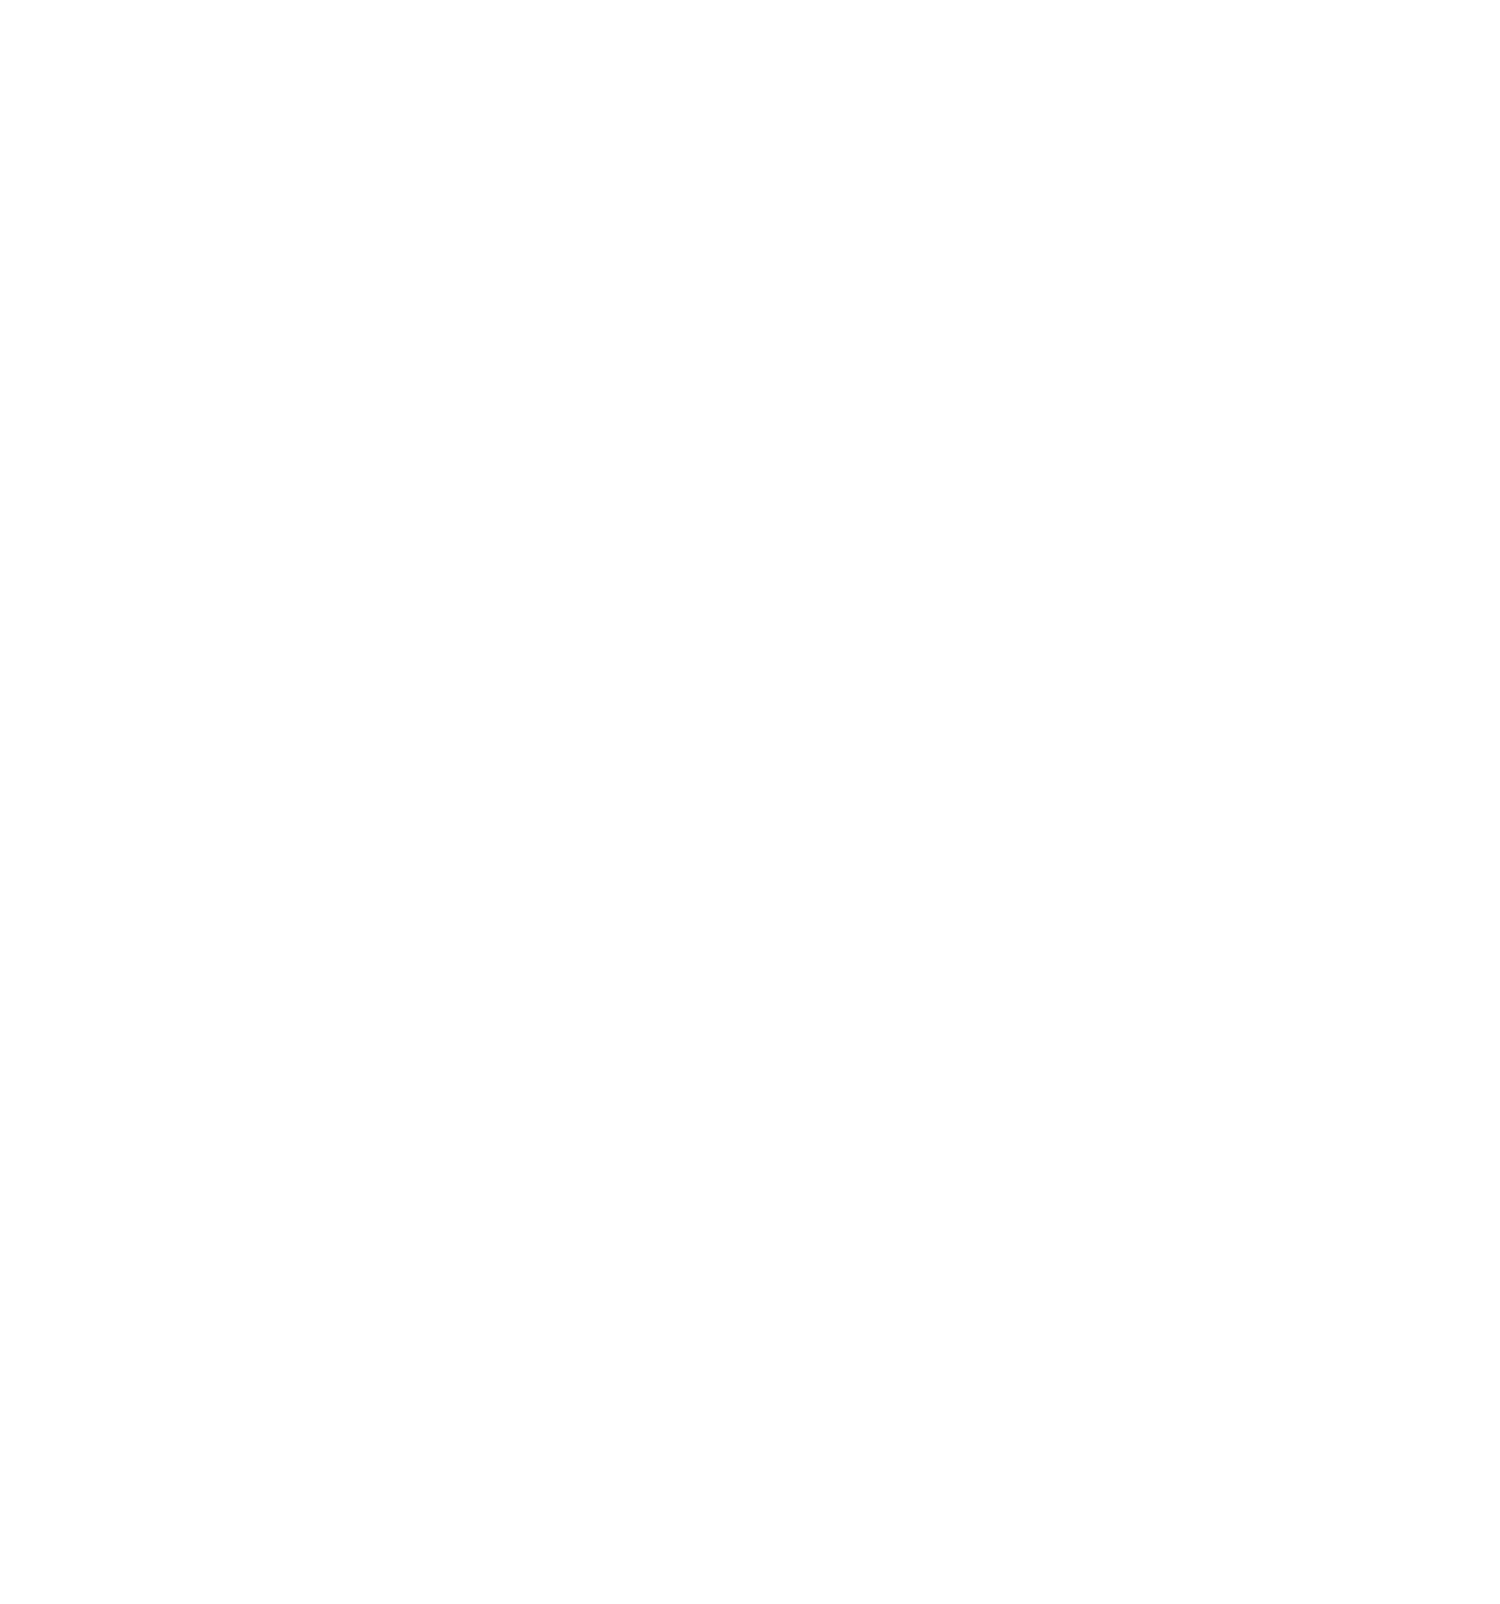 BIM-Y